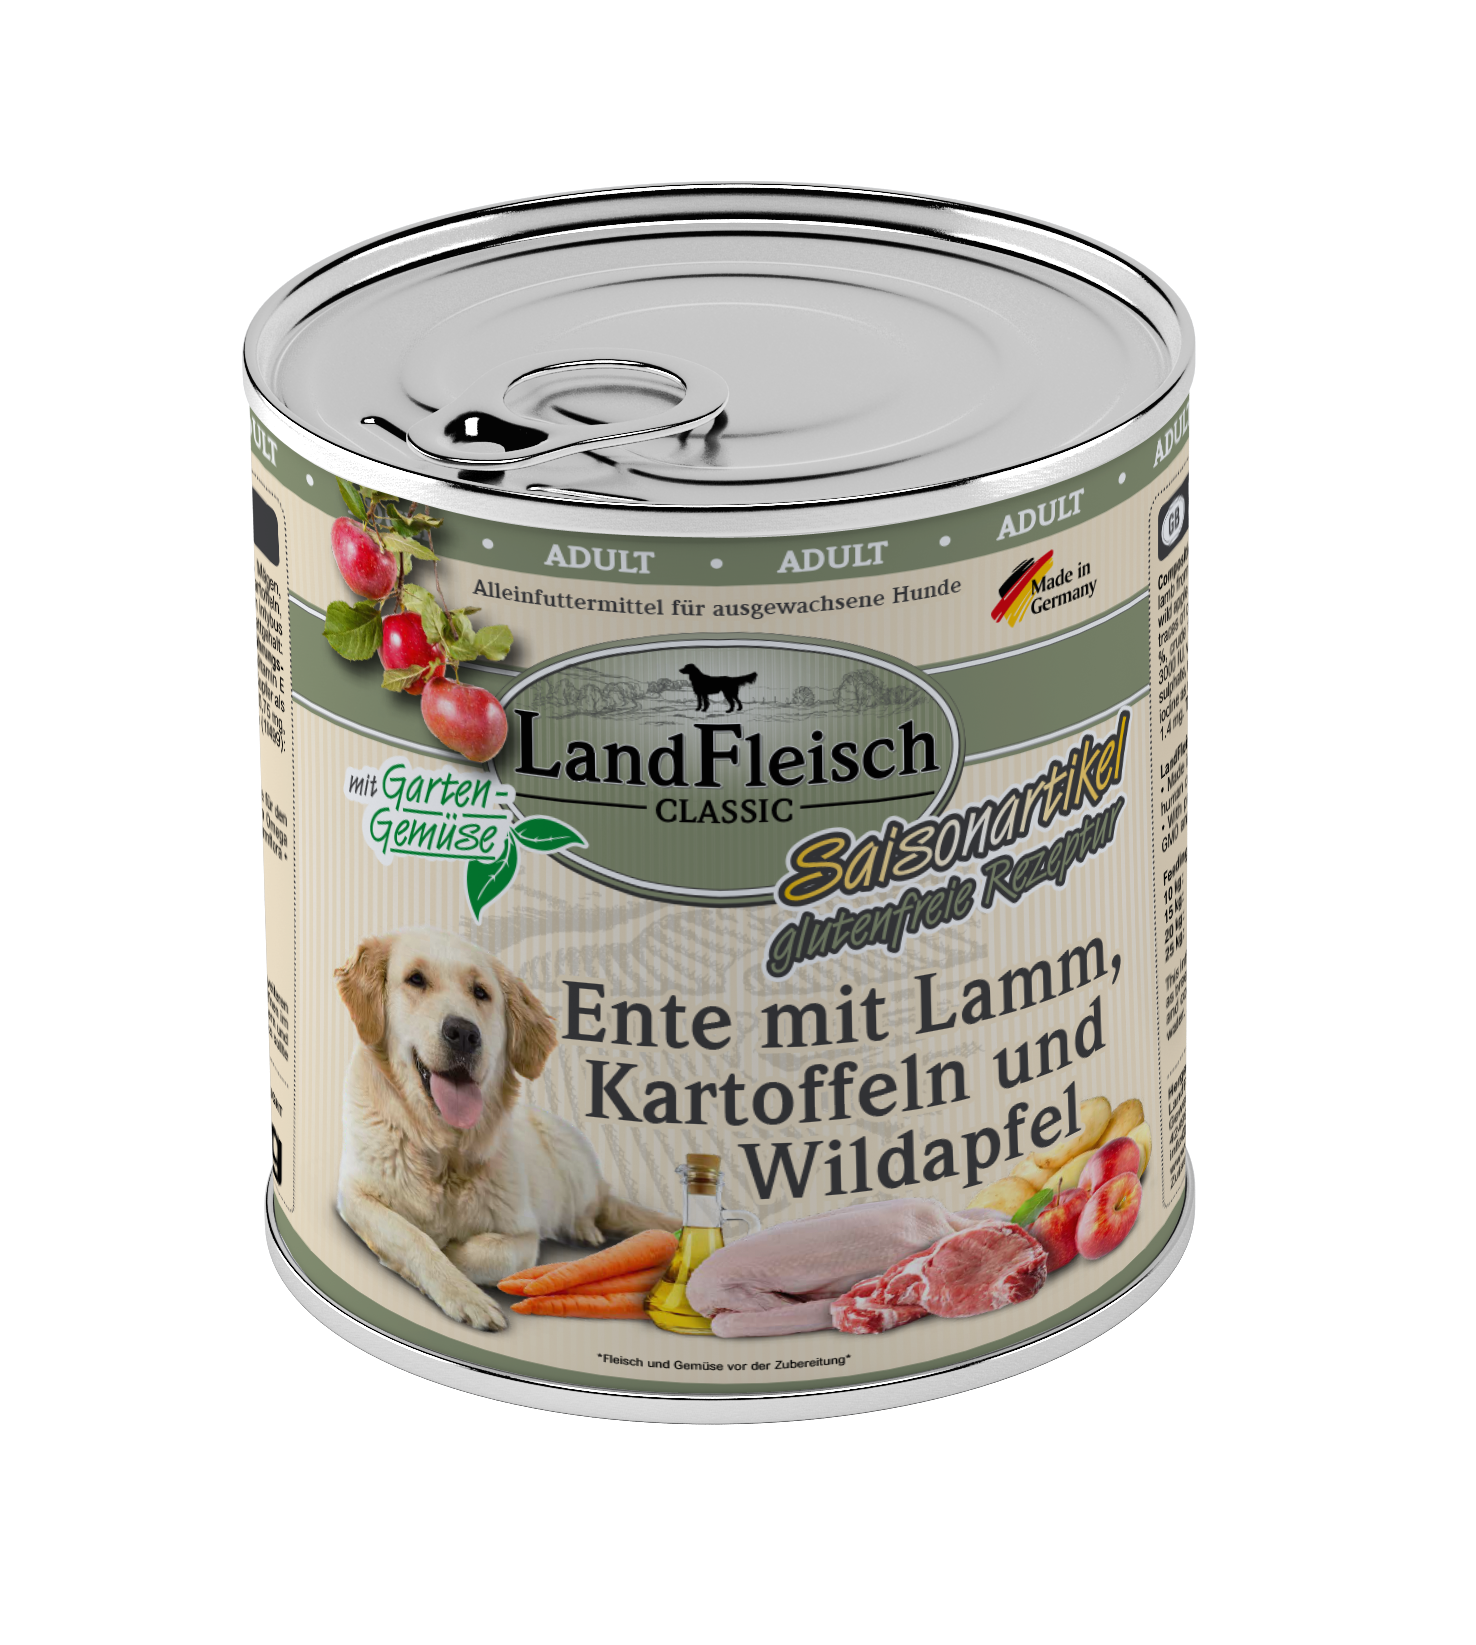 LandFleisch Dog Classic Ente mit Lamm, Kartoffelnn Wildapfel und Gartengemüse 800g